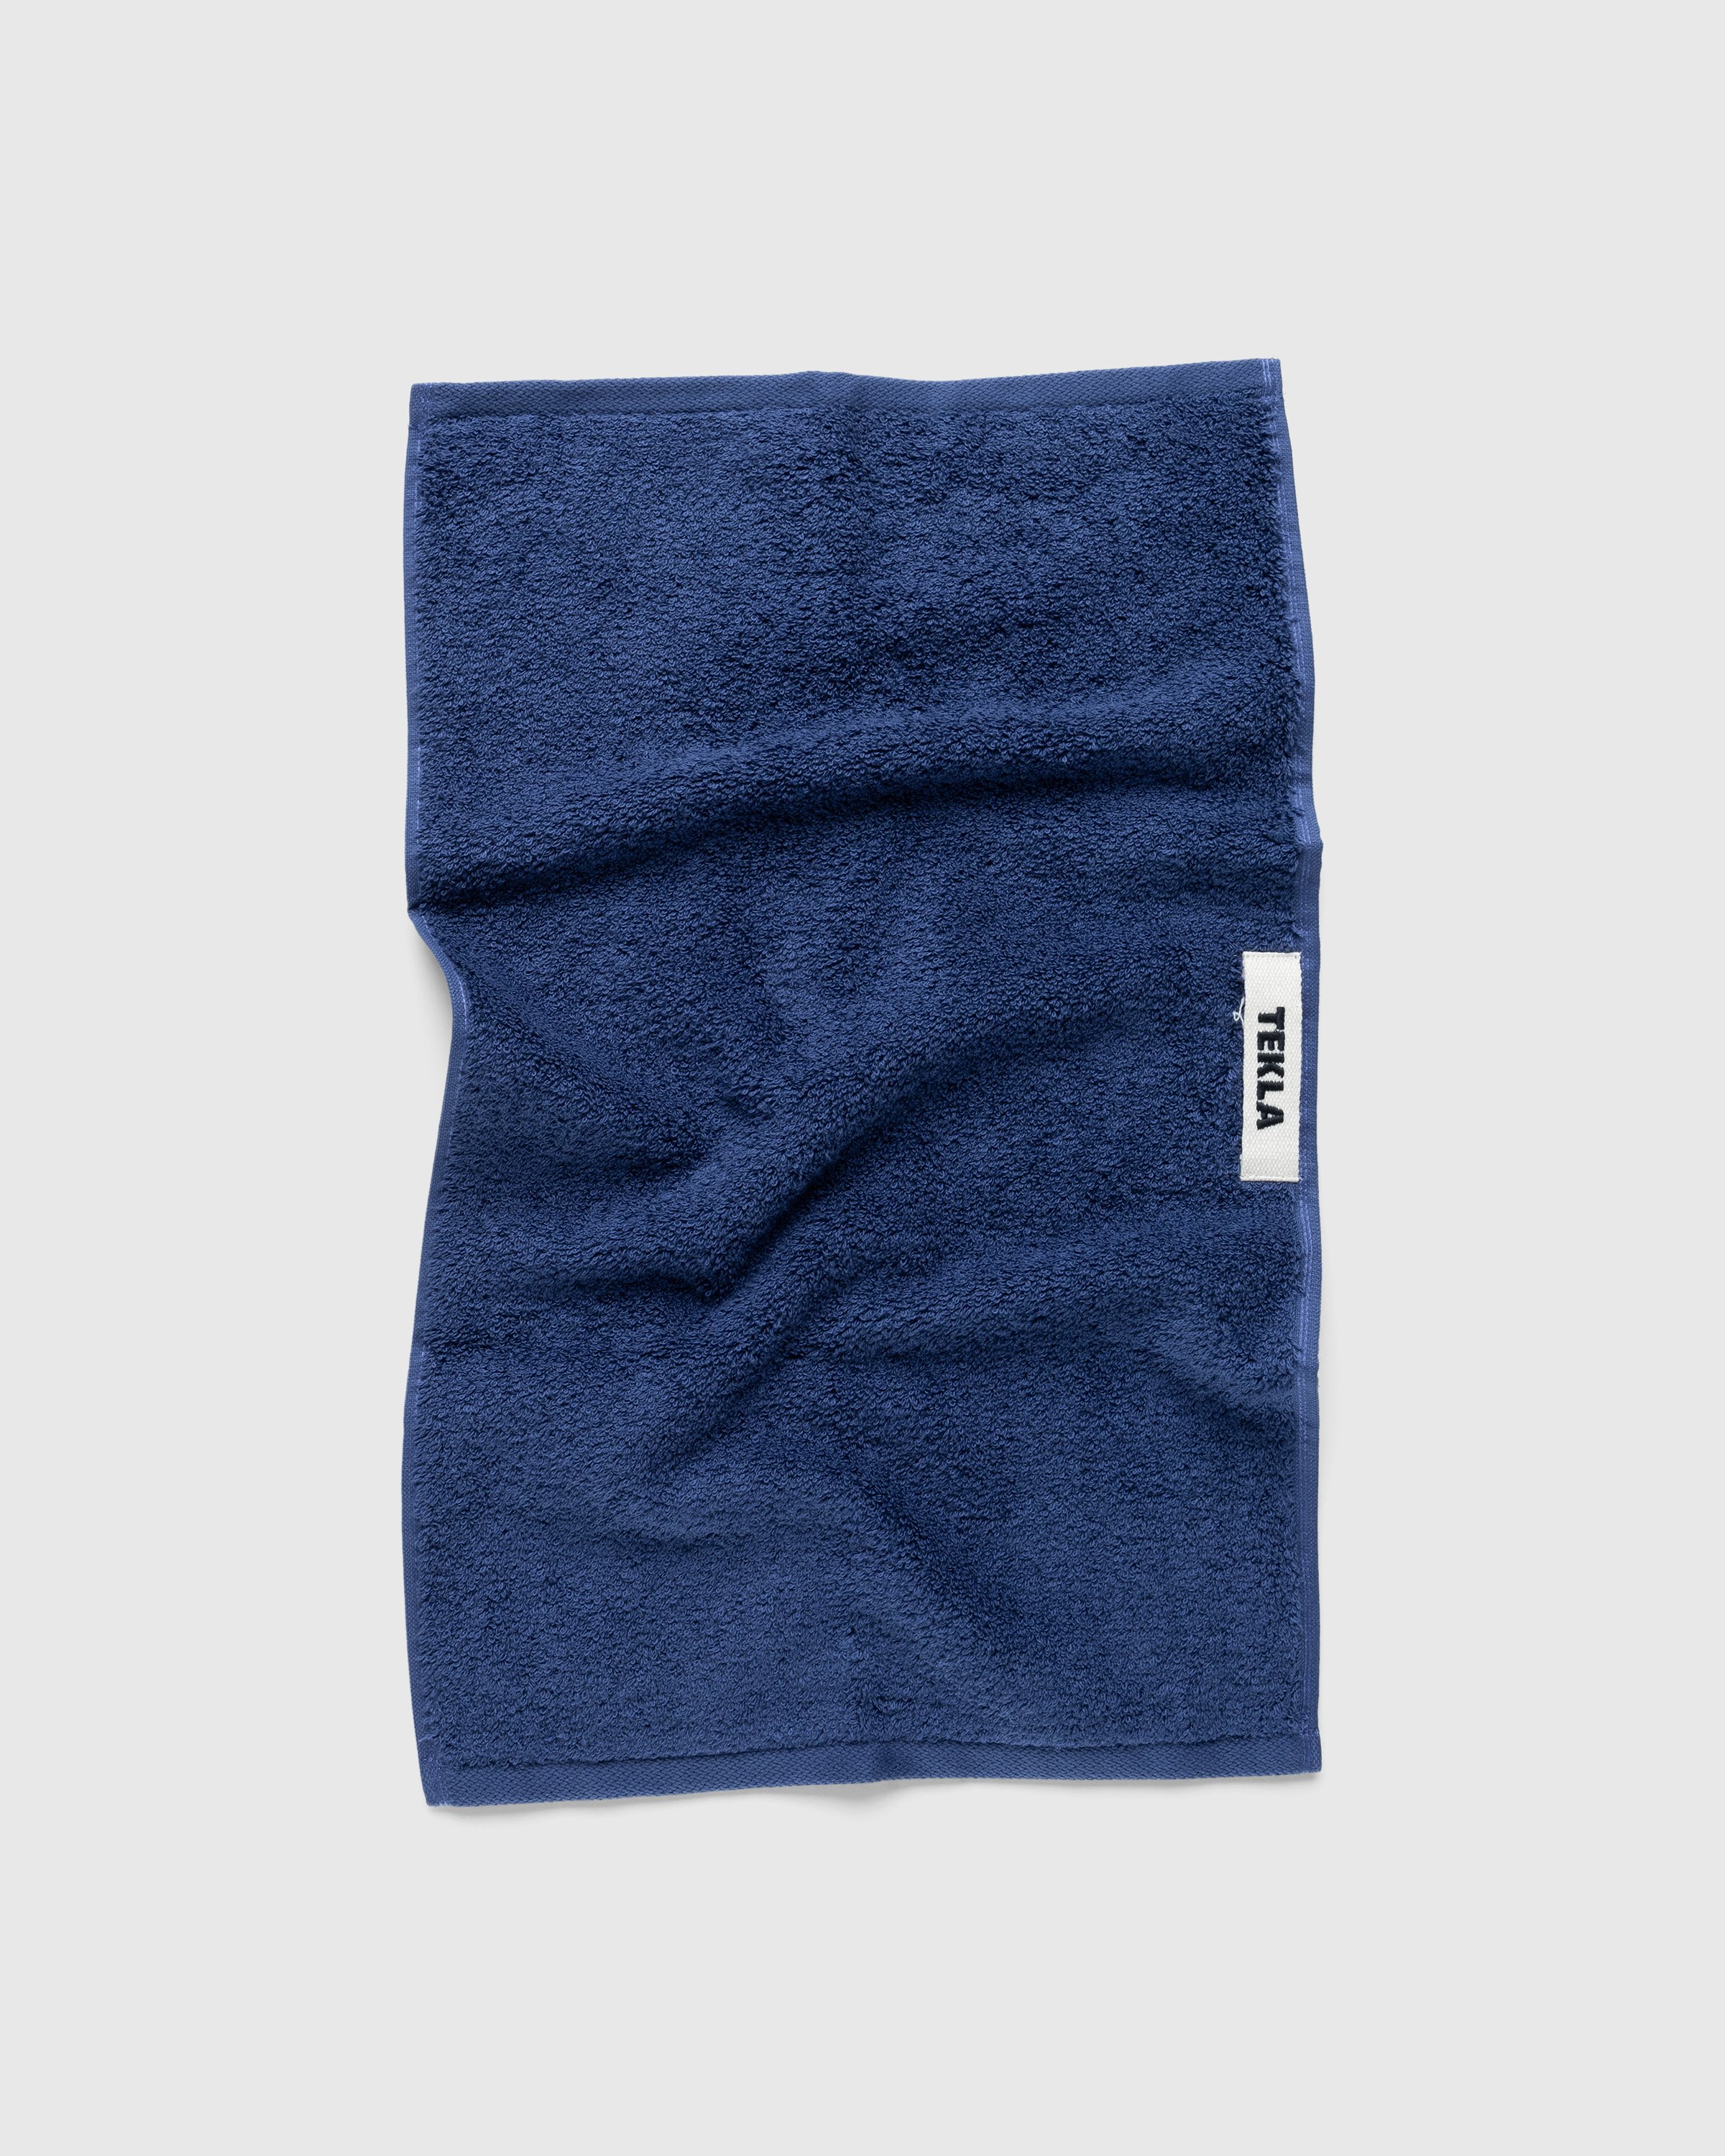 Tekla - Guest Towel 30x50 Navy - Lifestyle - Blue - Image 1